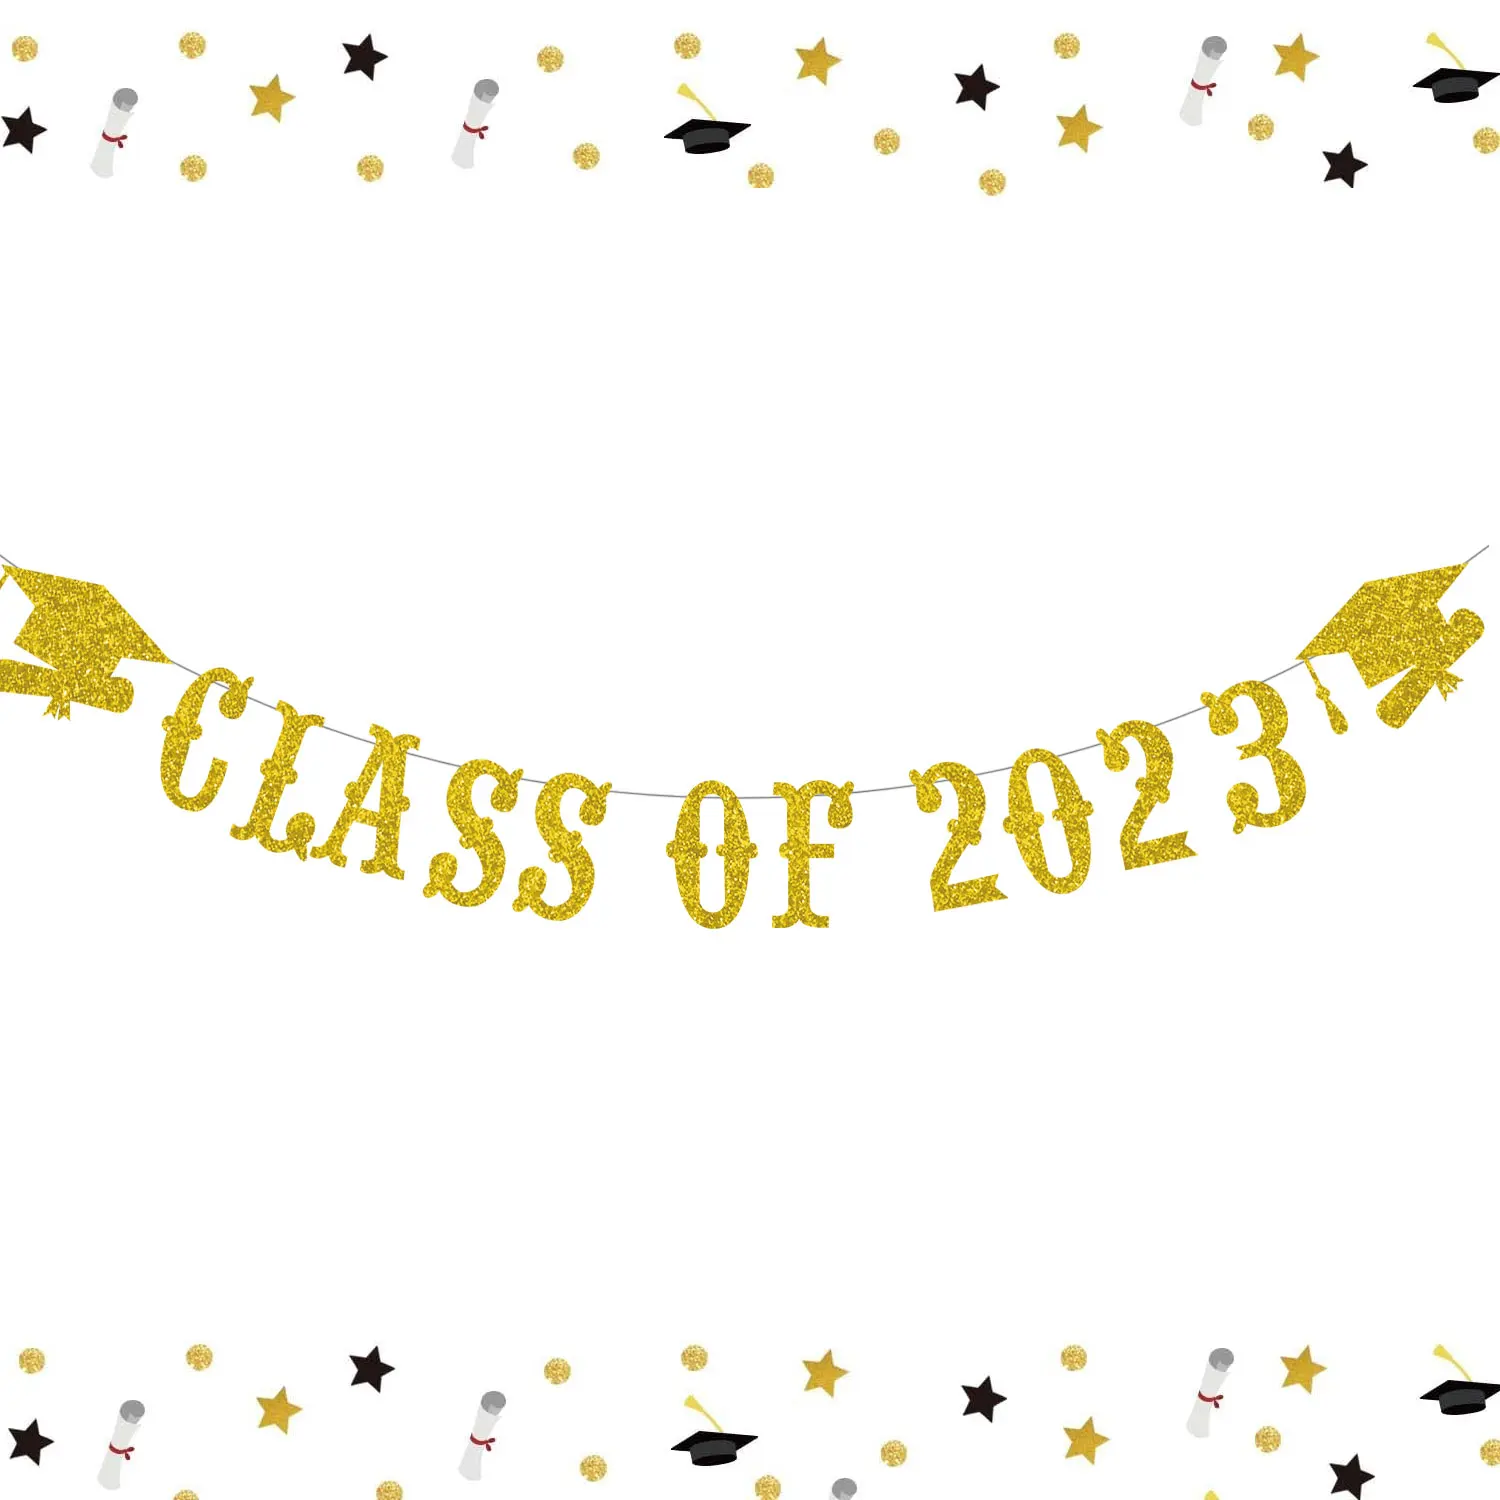 

Класс 2023, баннер с золотыми блестками, 2023 вечерние, украшения на выпускной, поздравления, градиентный баннер, украшение с золотой крышкой на выпускной